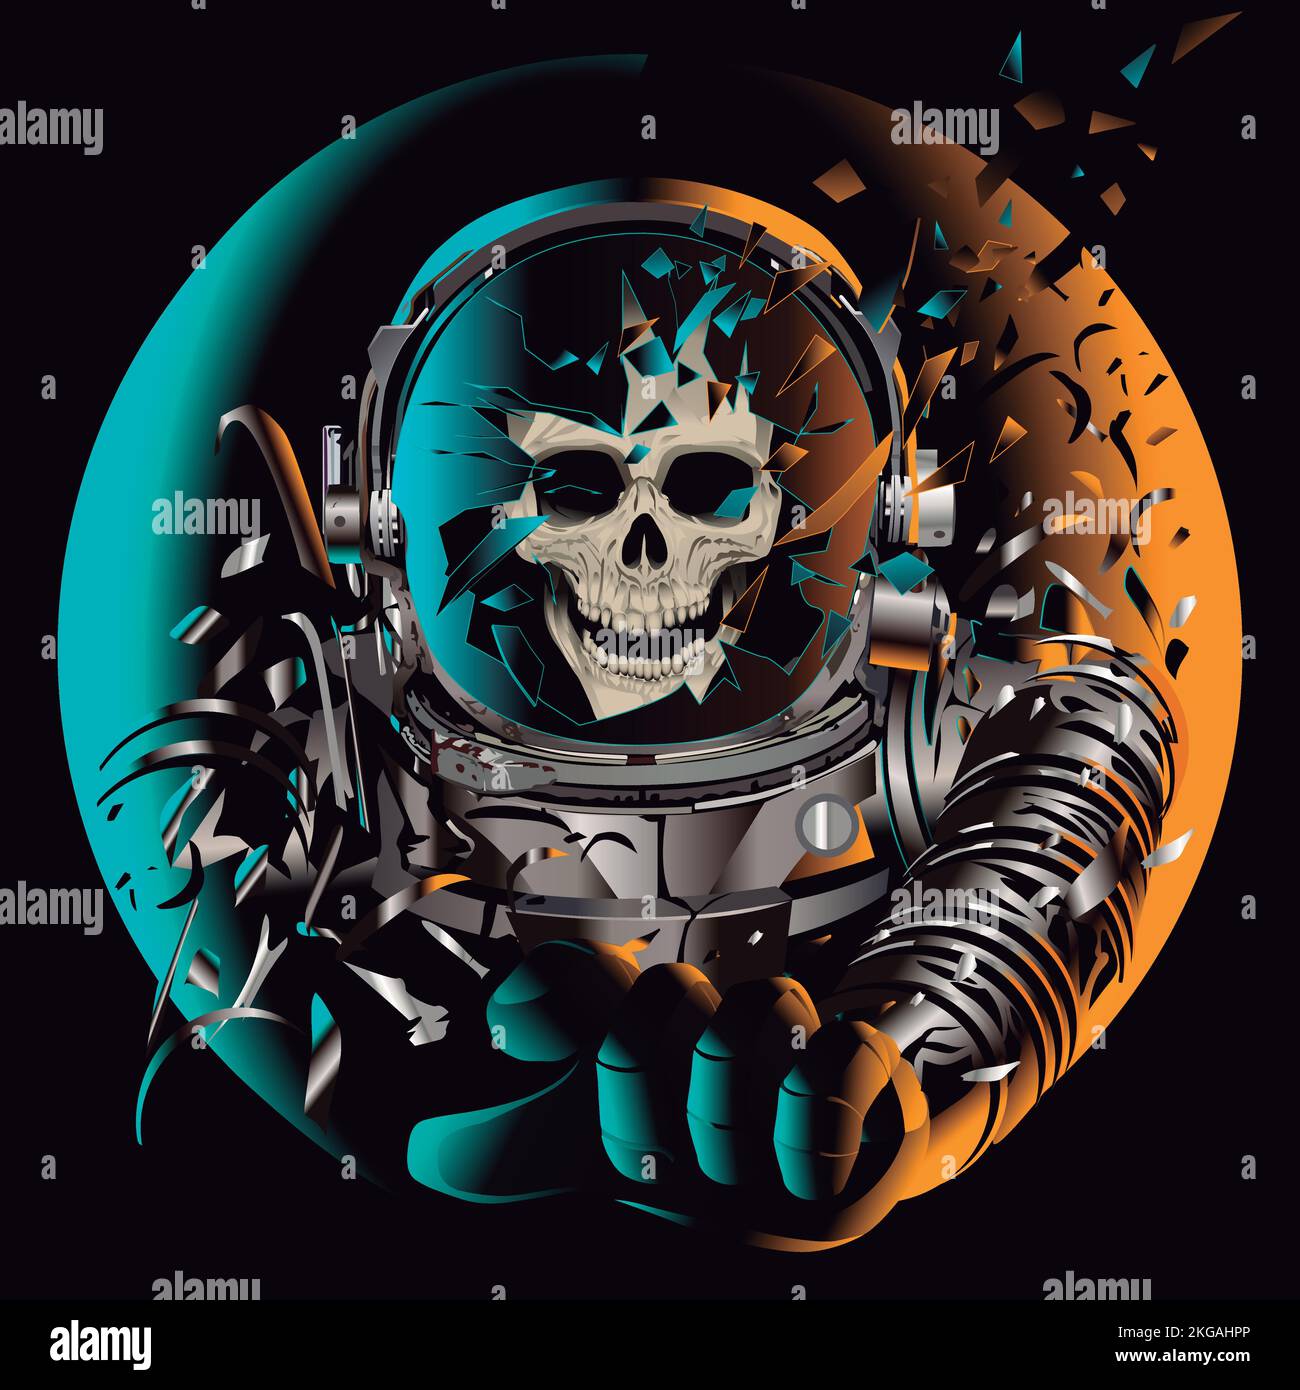 cranio astronauta, spaziale, casco rotto, astrista vintage horror poster perso nello spazio galassia voyager spazio astronauta morto. Casco frammentato Illustrazione Vettoriale